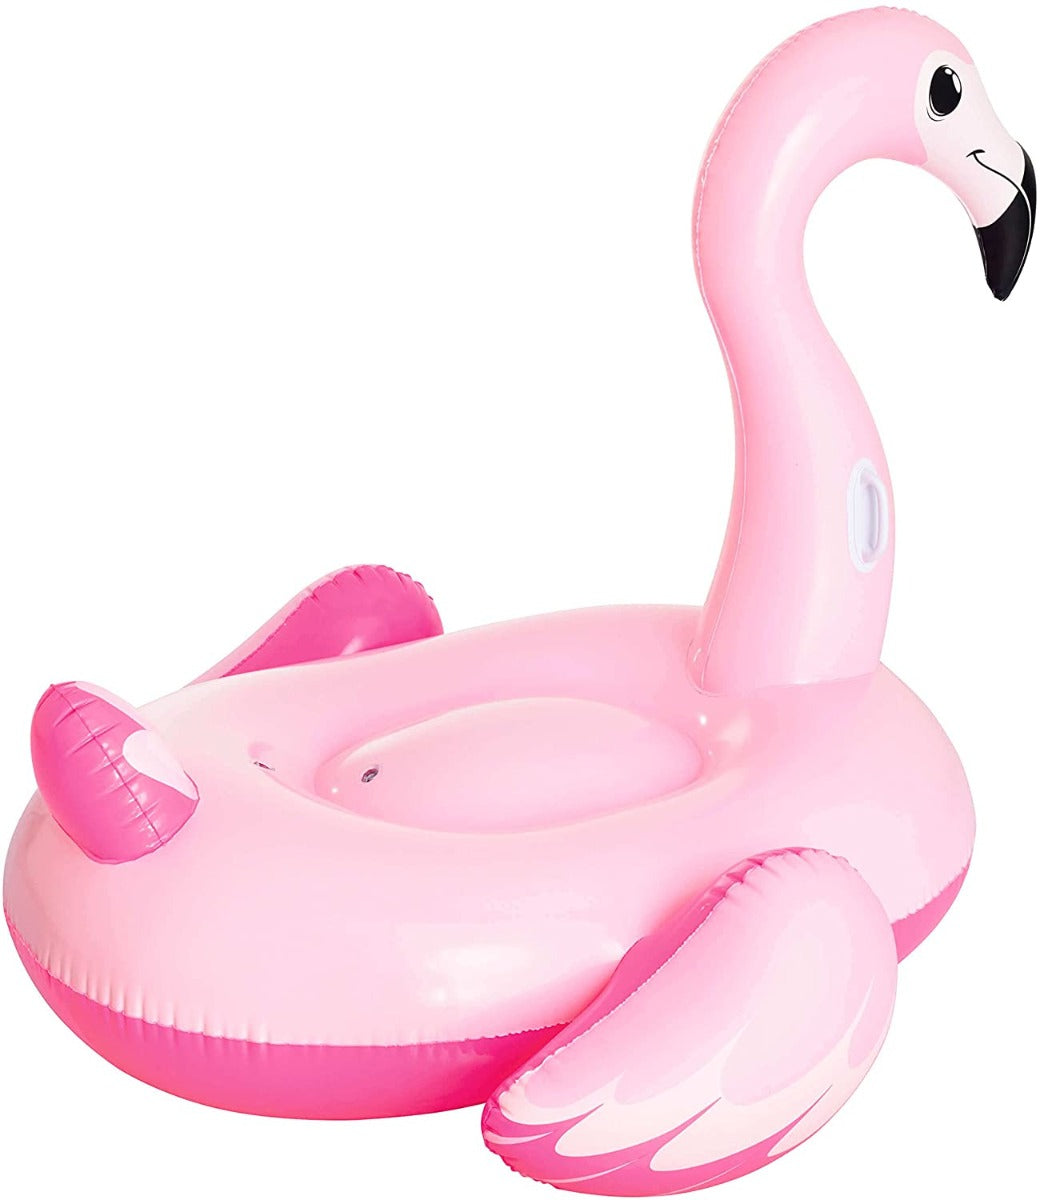 Schwimmtier Bestway Pretty Pink Flamingo Rider Badeinsel Flamingo Pool Tiere zum Aufblasen